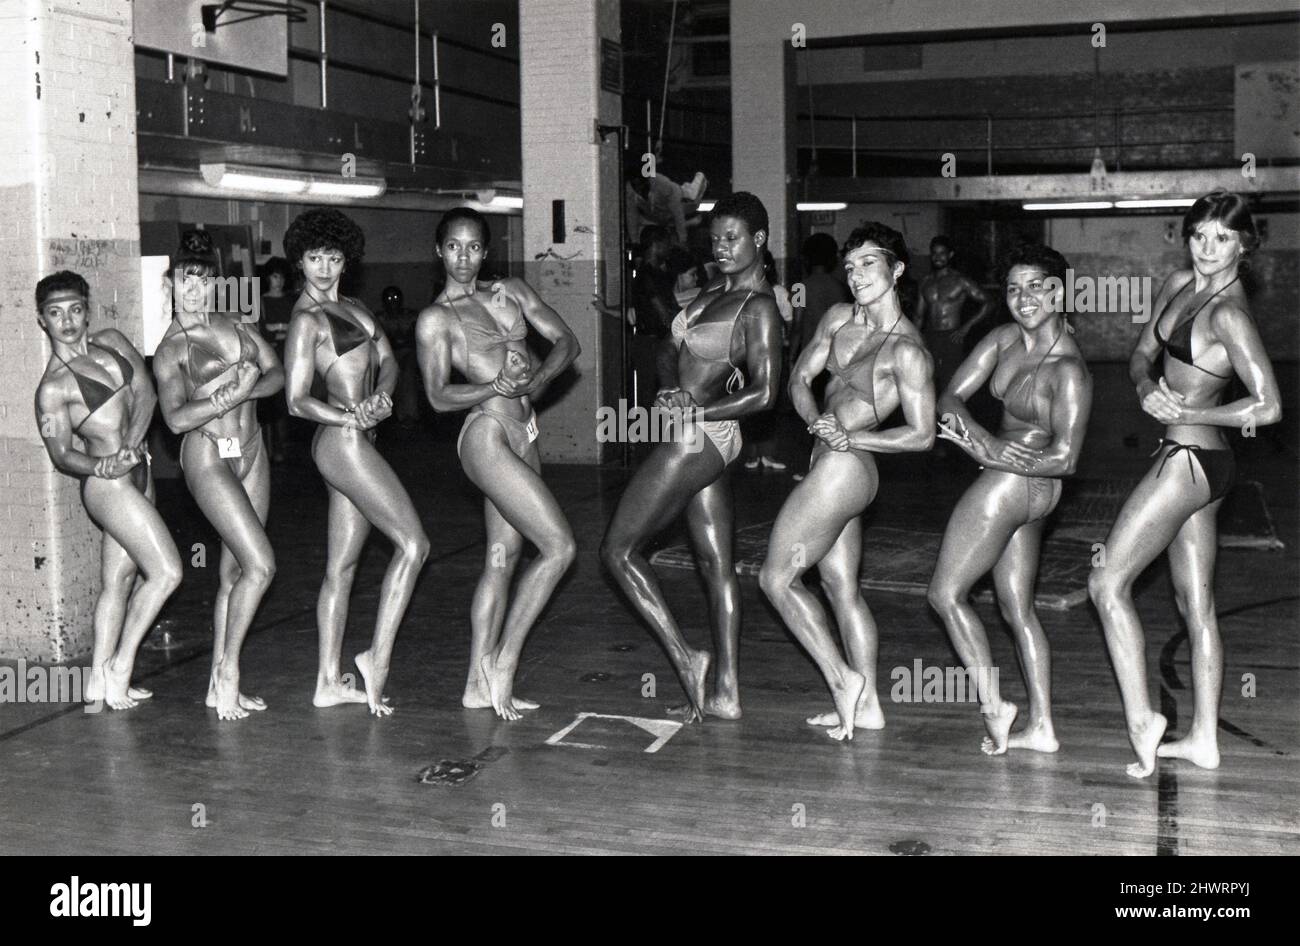 Teilnehmer an der Women's Kings County Open Body Division Championship. 1982 in Brooklyn, New York. Können Sie den Gewinner erraten? Stockfoto